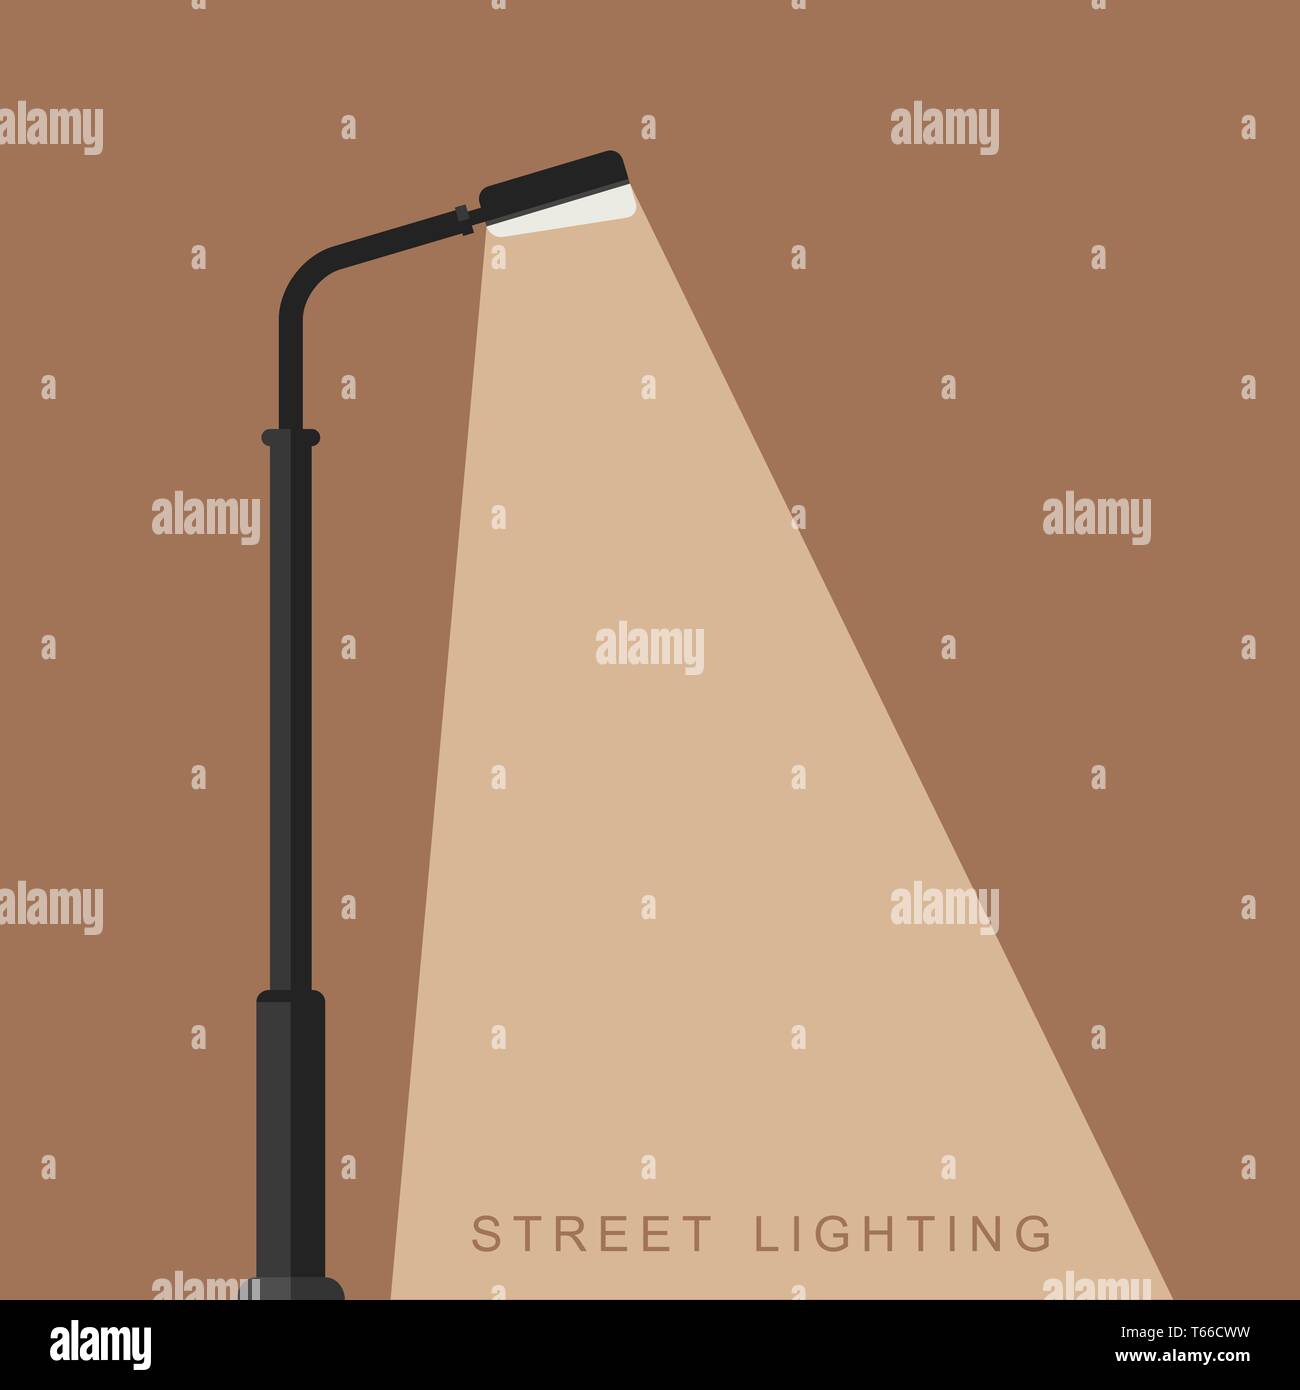 Outdoor lighting banner Stock Vector